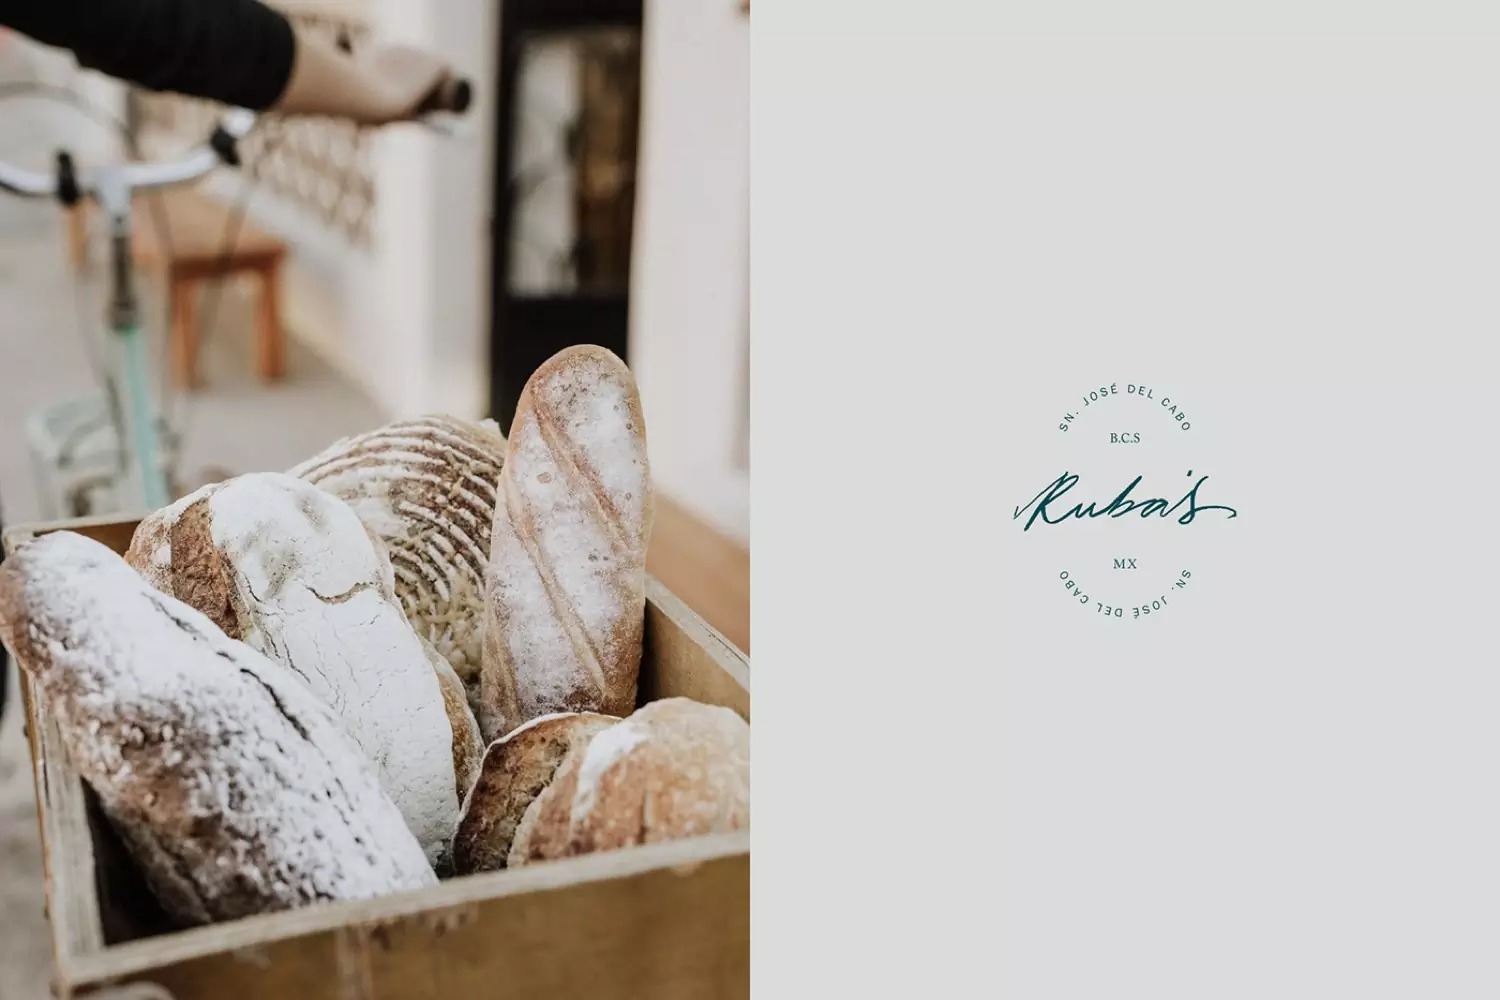 Ruba's面包店品牌形象设计